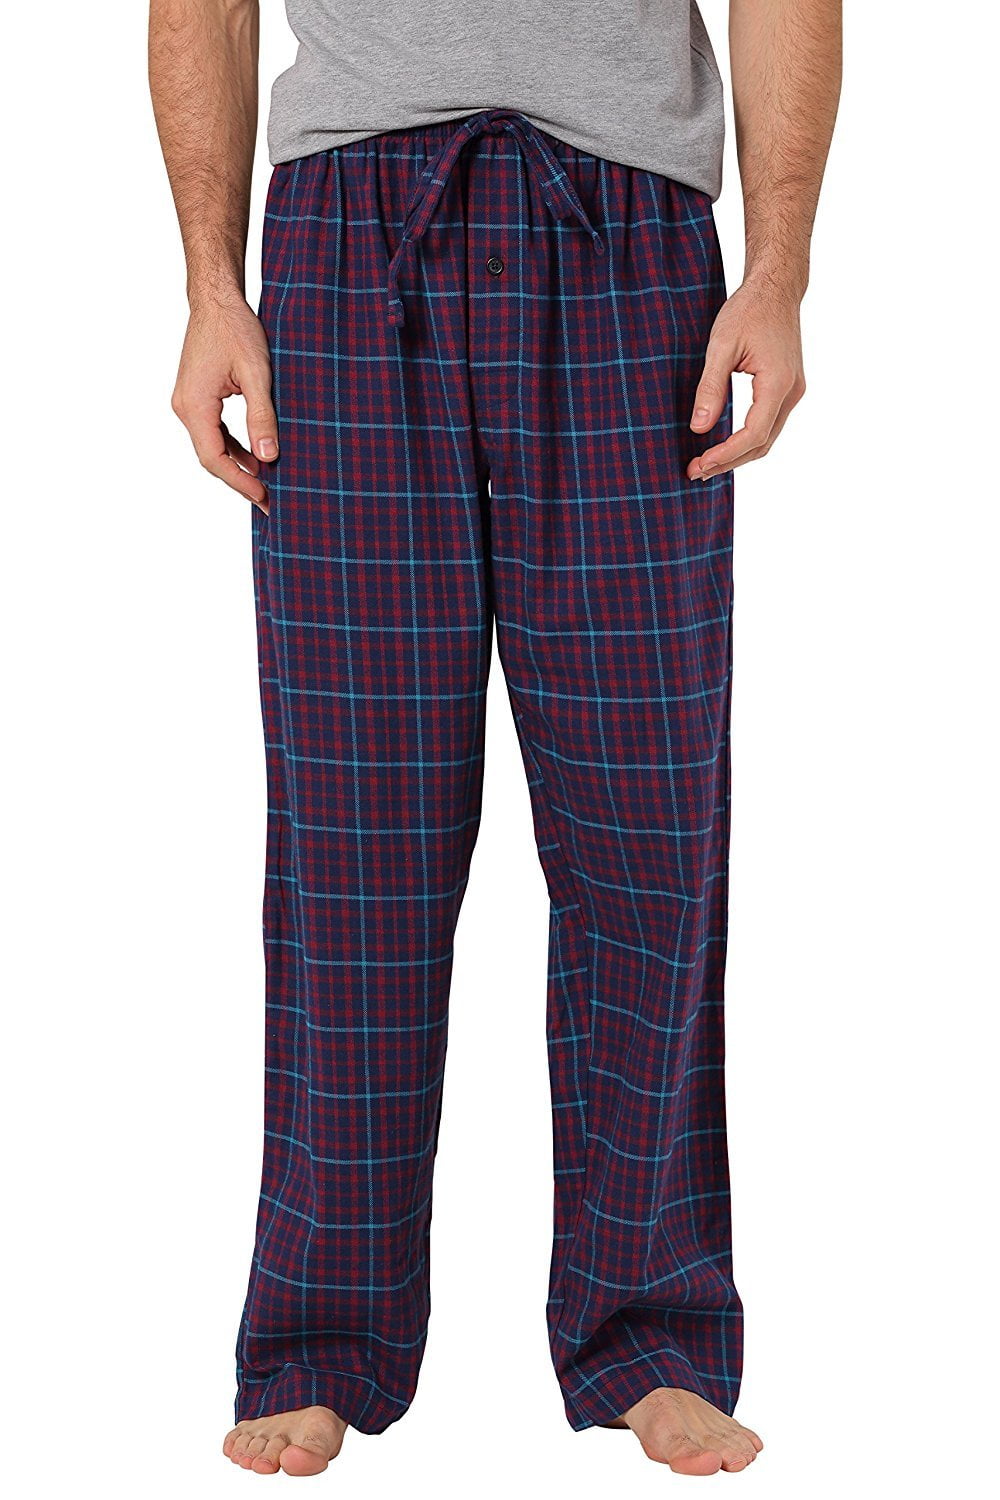 CYZ Men's 100% Cotton Super Soft Flannel Plaid Pajama Pant - Walmart.com